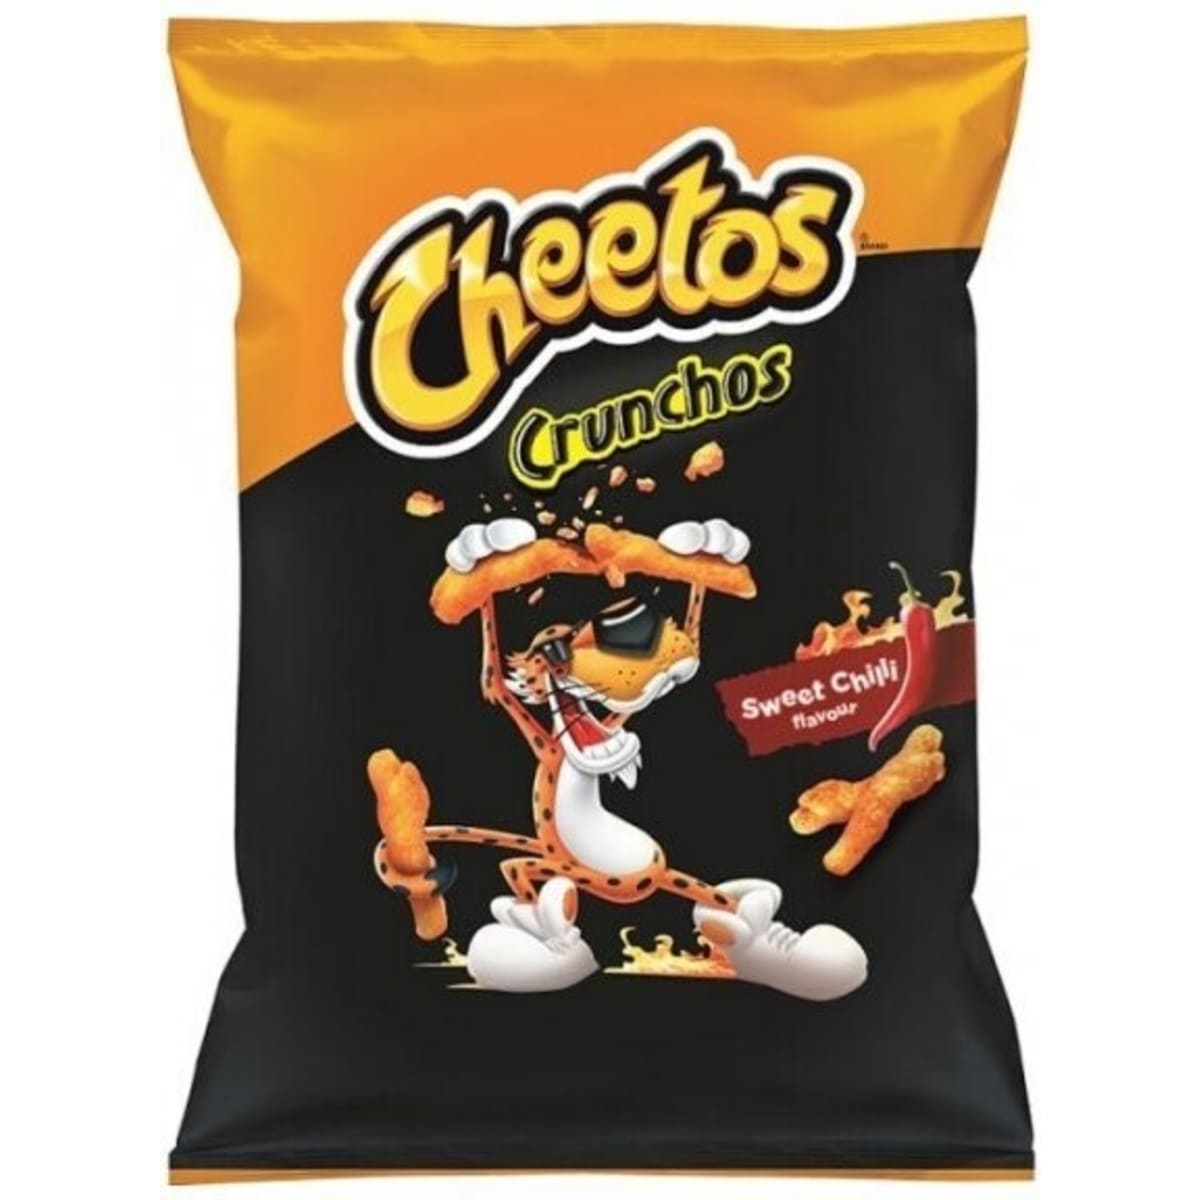 Cheetos Crunchos Sweet Chilli 165 g maissisnacks   verkkokauppa